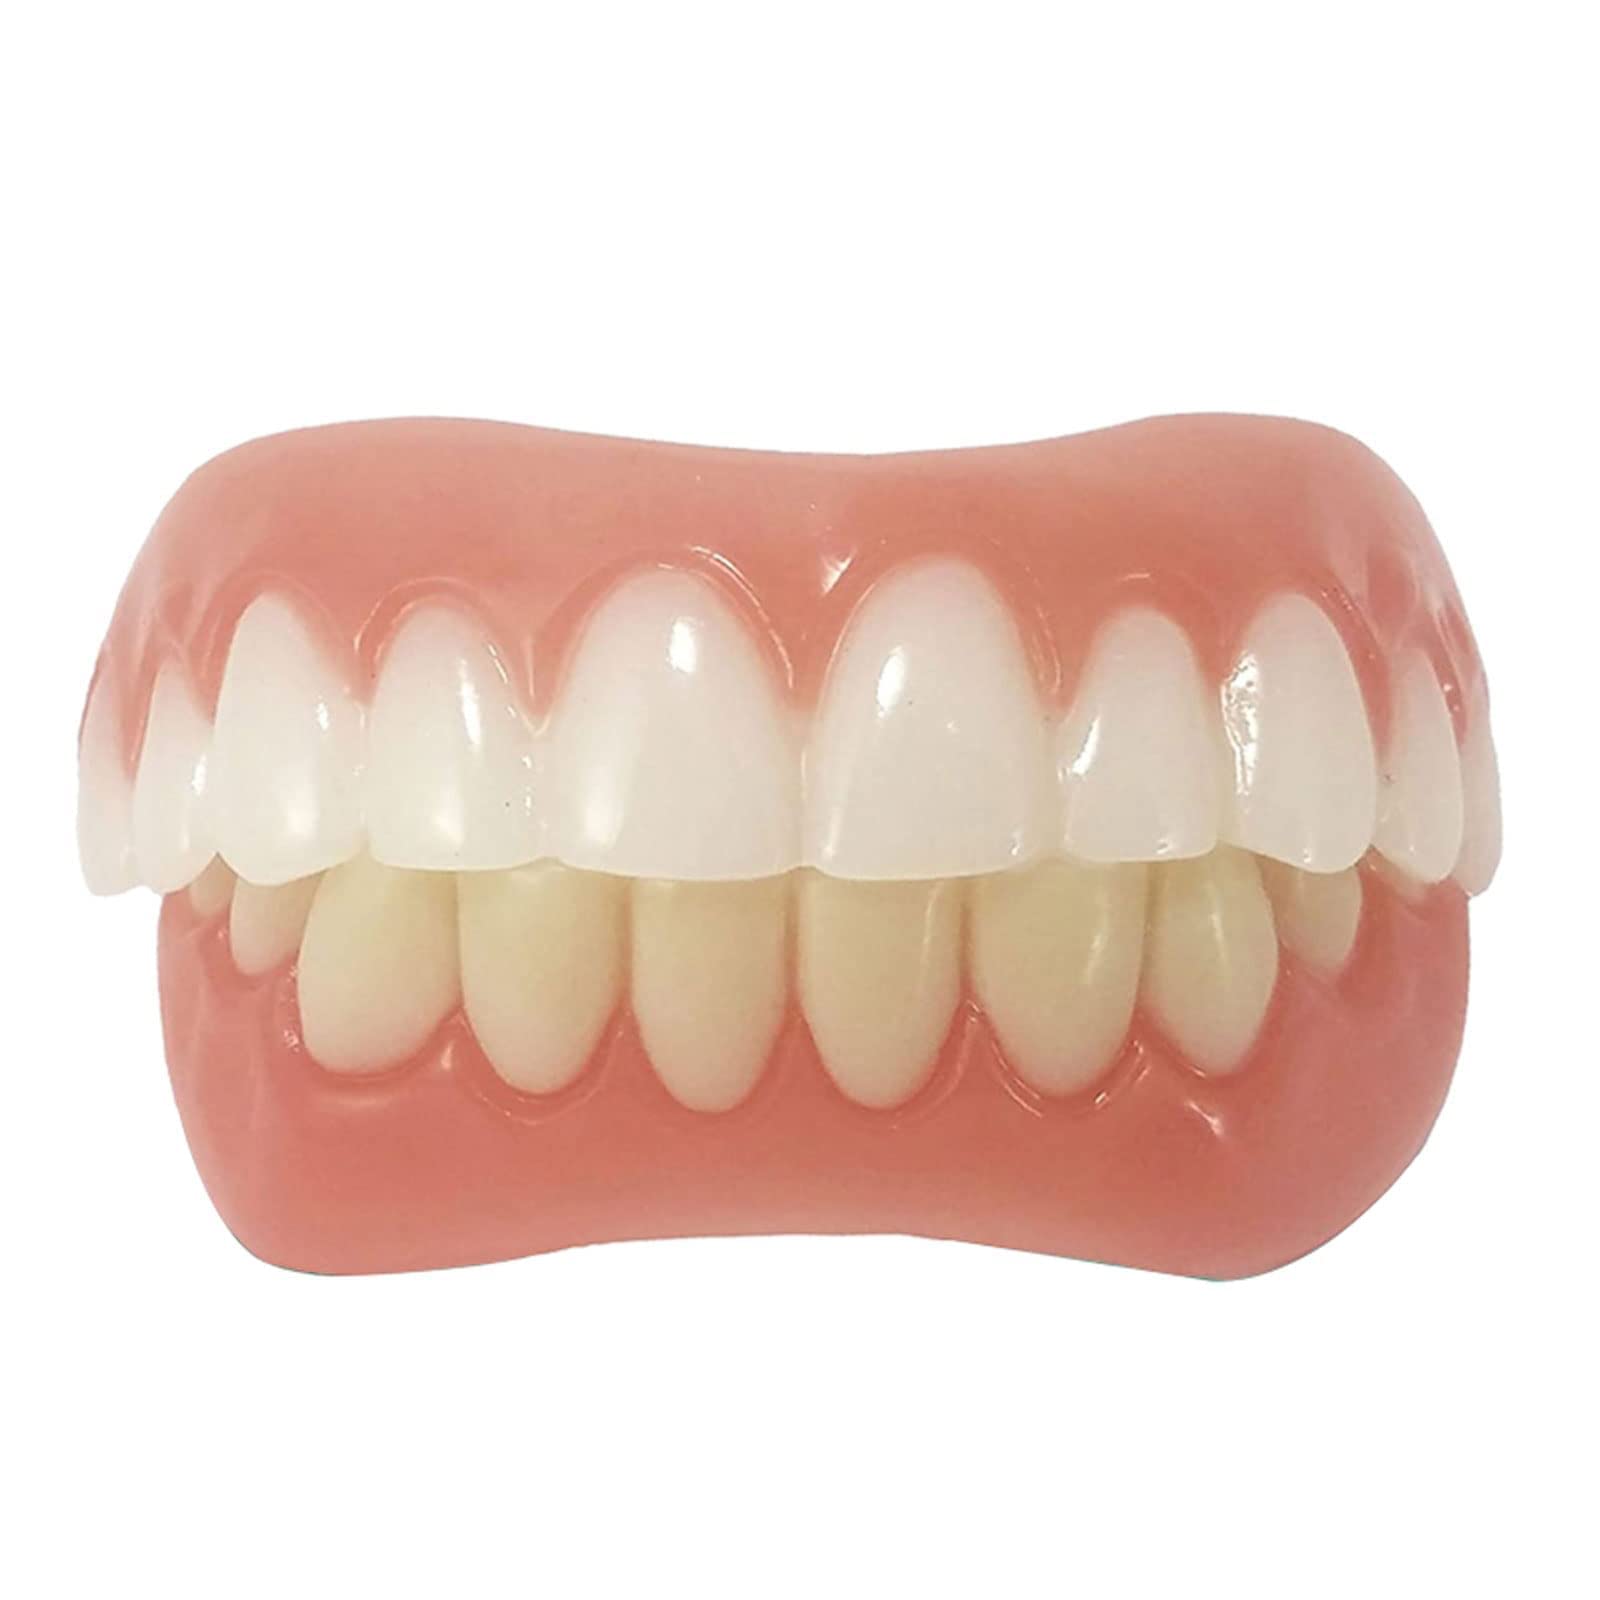 Upper and Lower Veneer Dentures for Women and Men Fake Teeth Natural ...